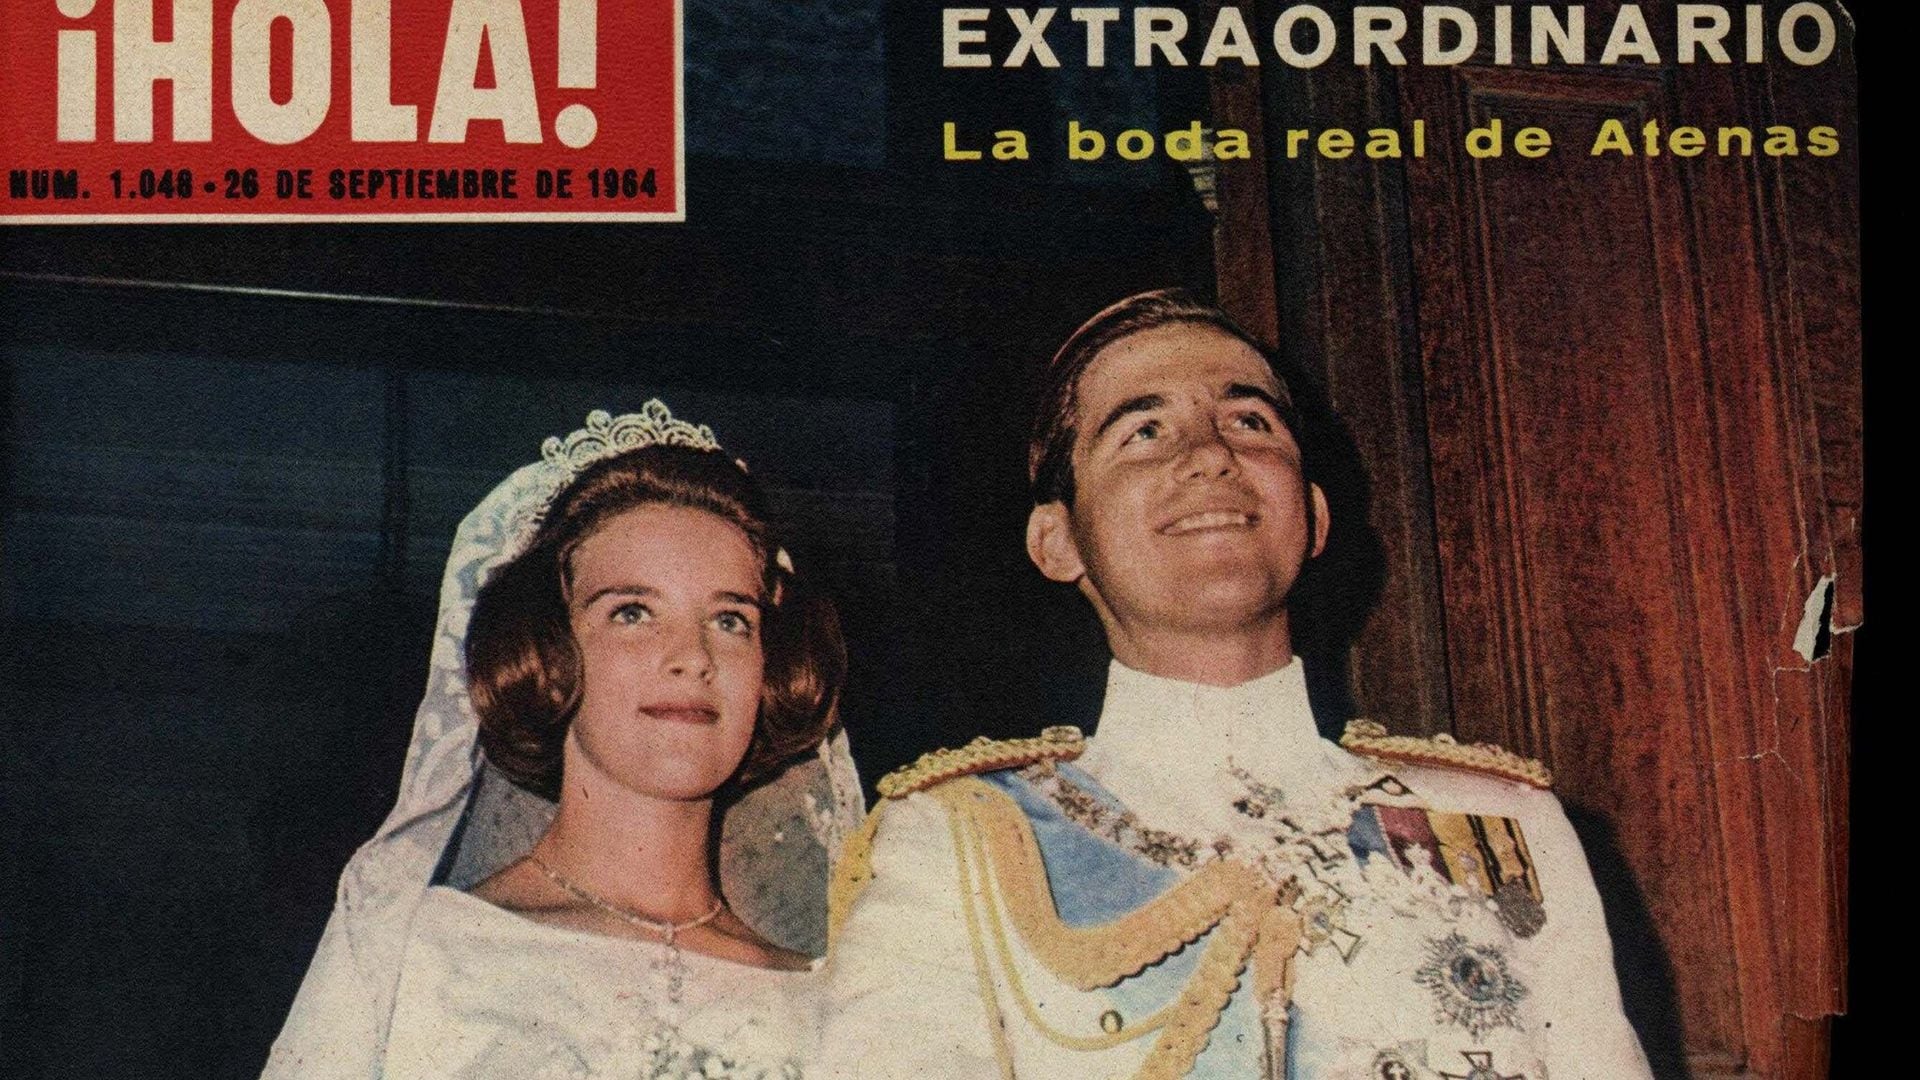 boda constantino de grecia hola 1964